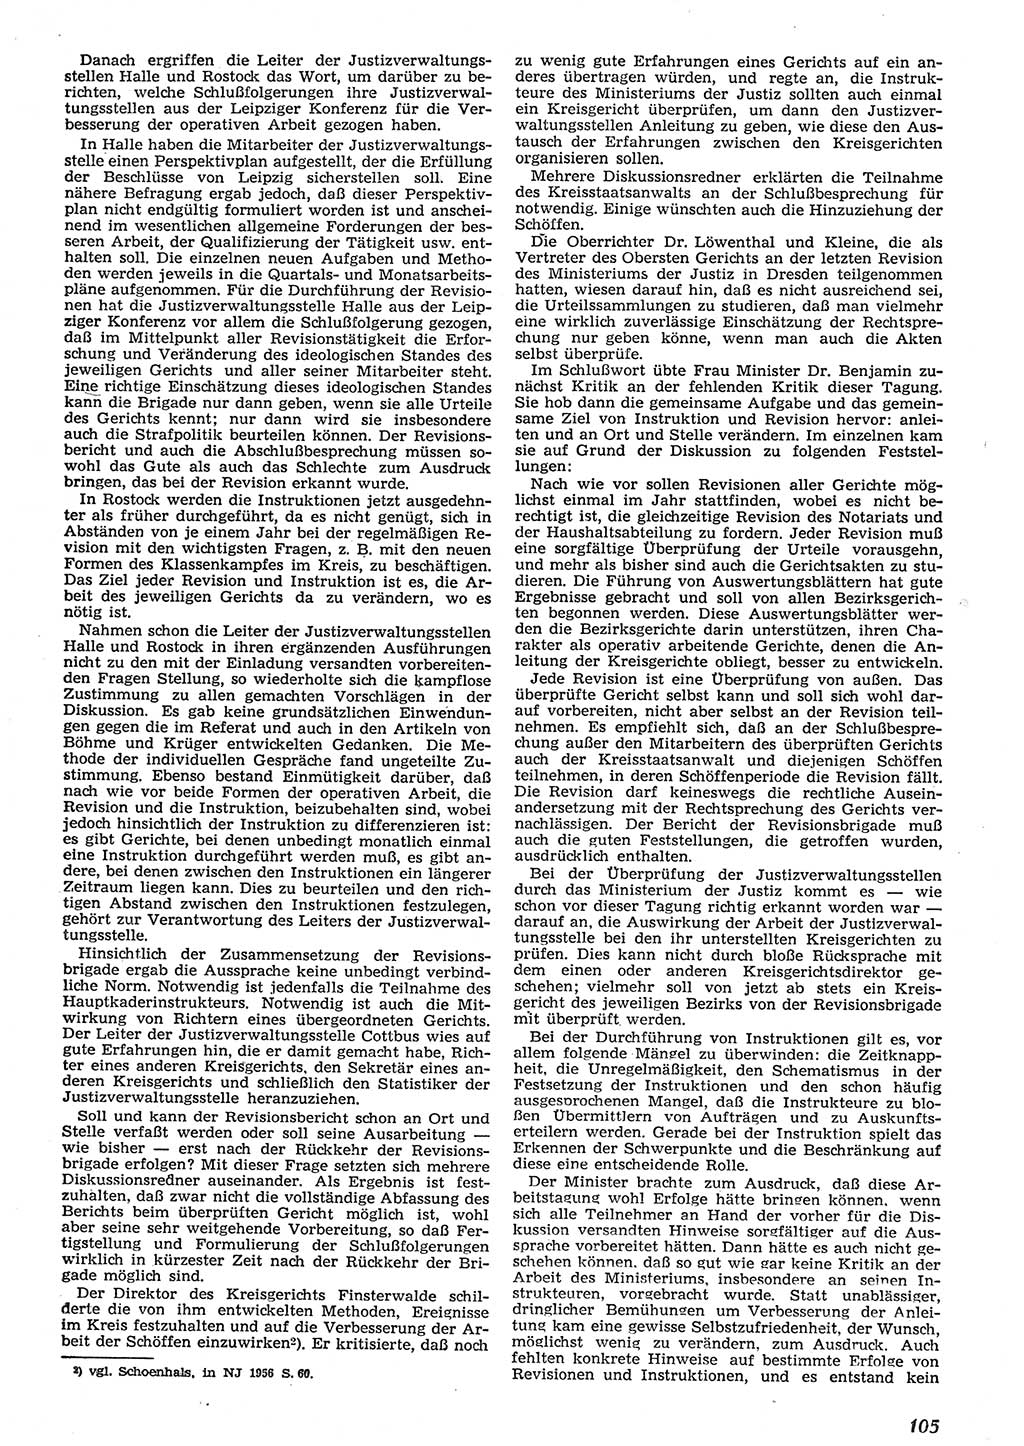 Neue Justiz (NJ), Zeitschrift für Recht und Rechtswissenschaft [Deutsche Demokratische Republik (DDR)], 10. Jahrgang 1956, Seite 105 (NJ DDR 1956, S. 105)